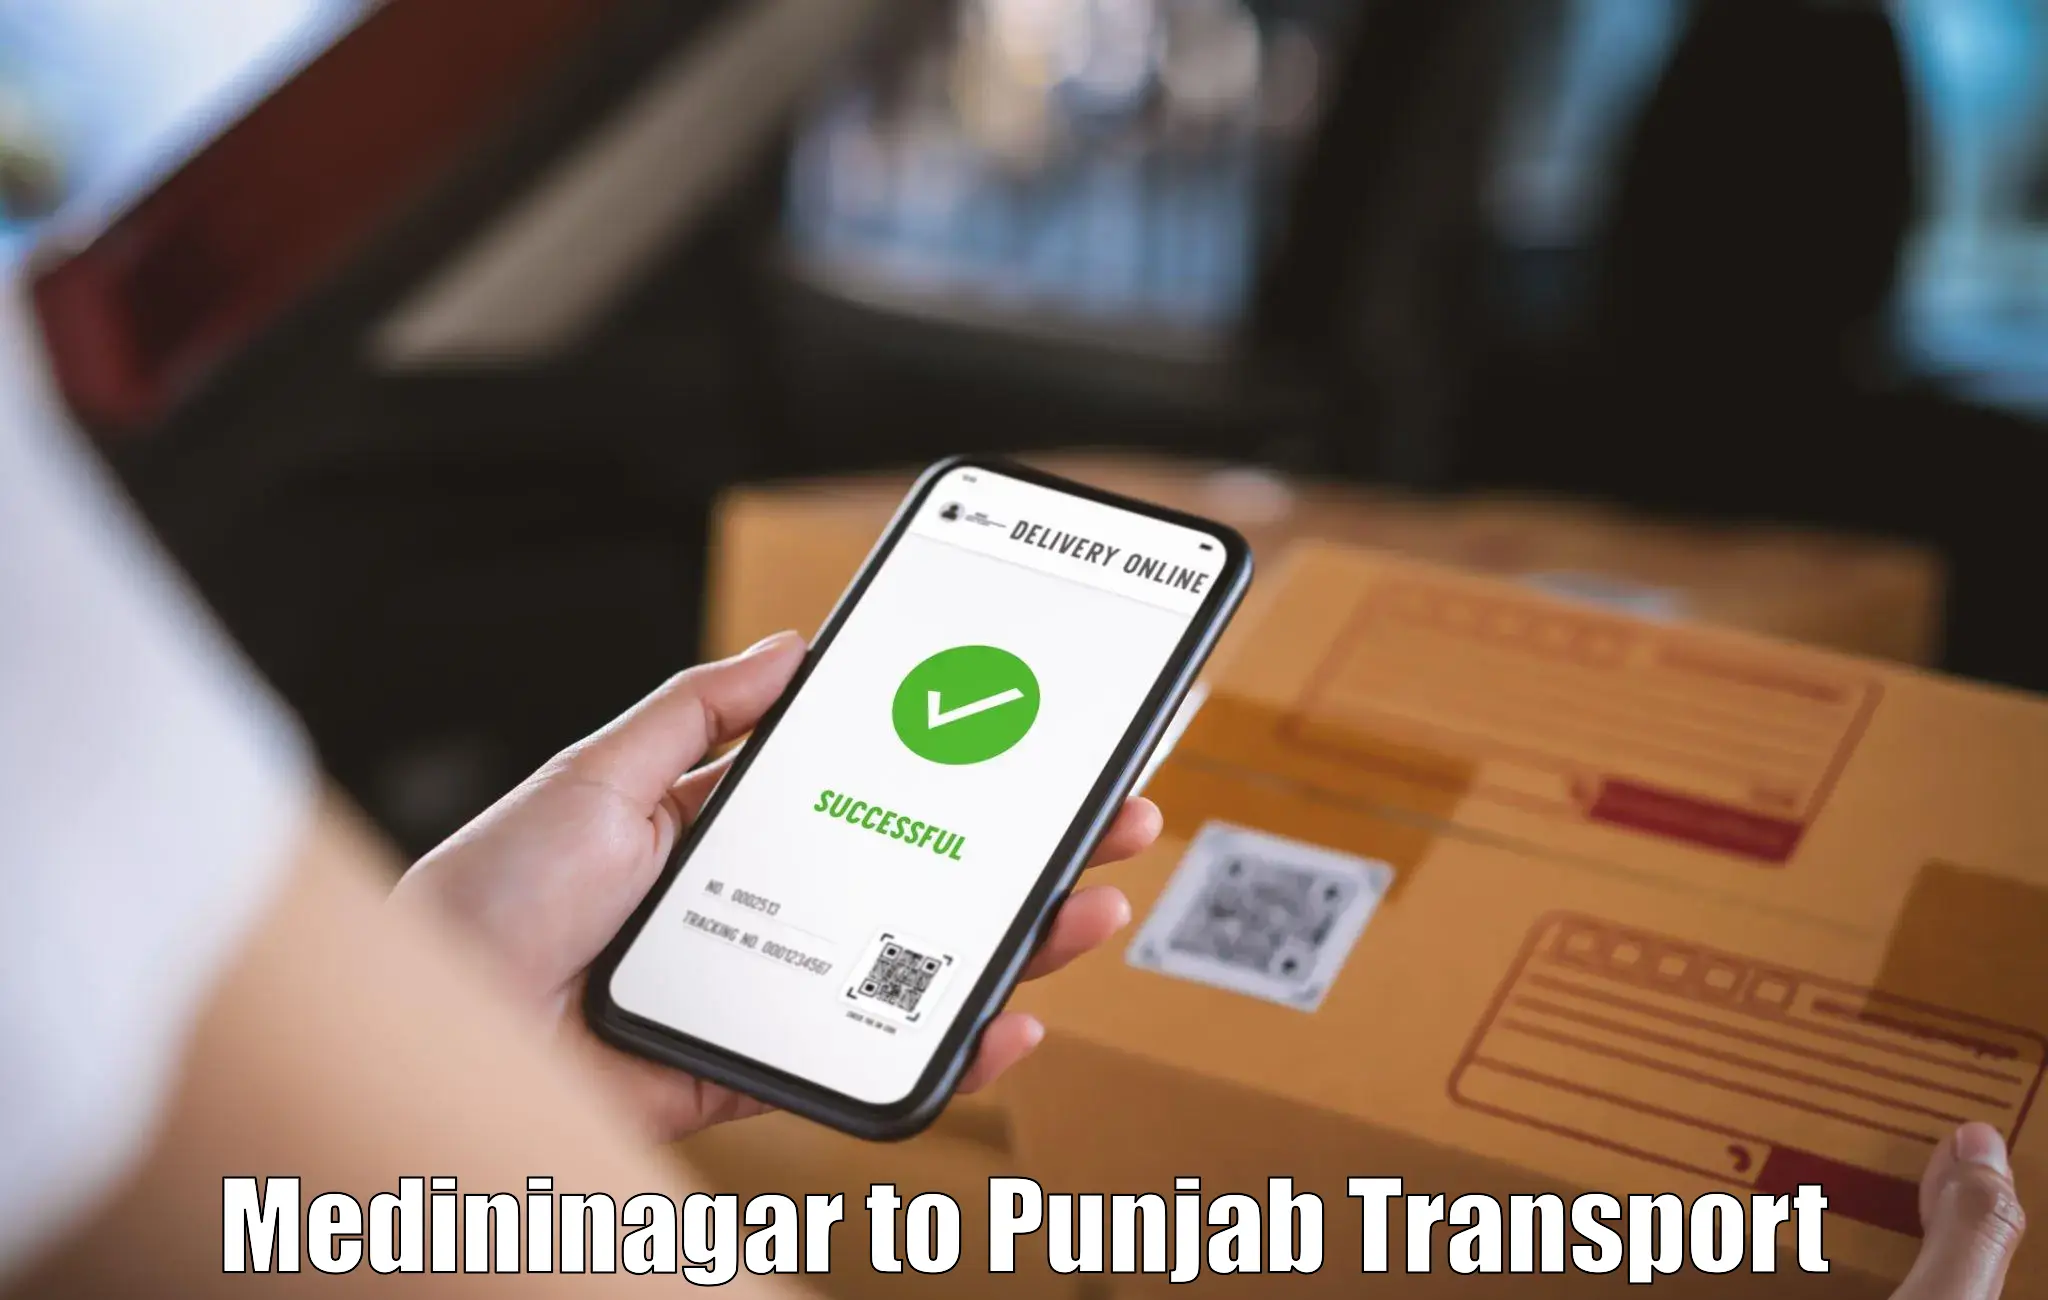 Container transportation services Medininagar to Punjab